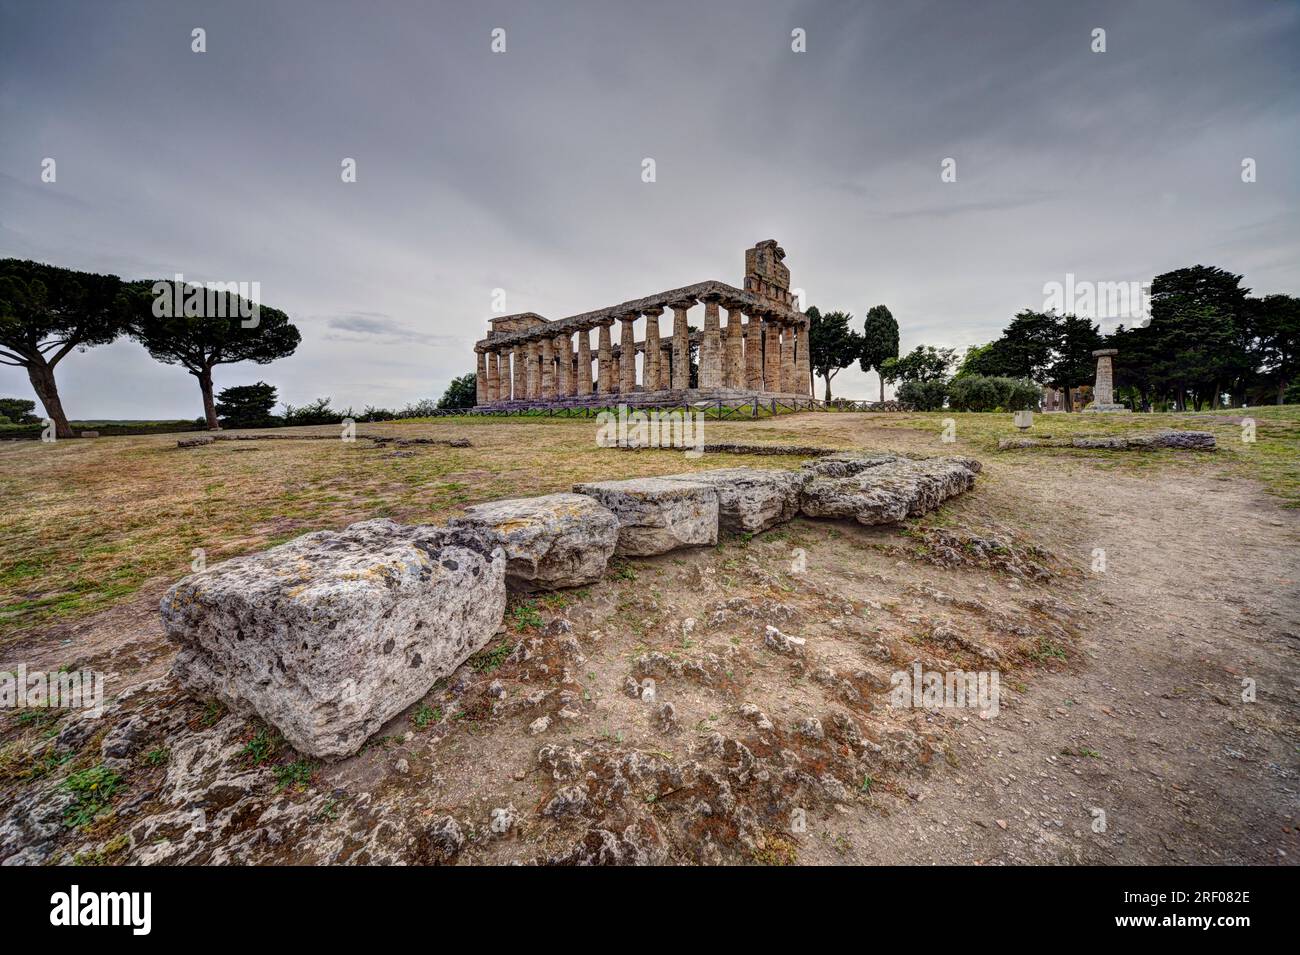 Griechischer Tempel der griechischen Göttin Athena (Minerva für die Römer) in Paestum, Italien, ein UNESCO-Weltkulturerbe. Tiefgreifende Perspektive. Stockfoto